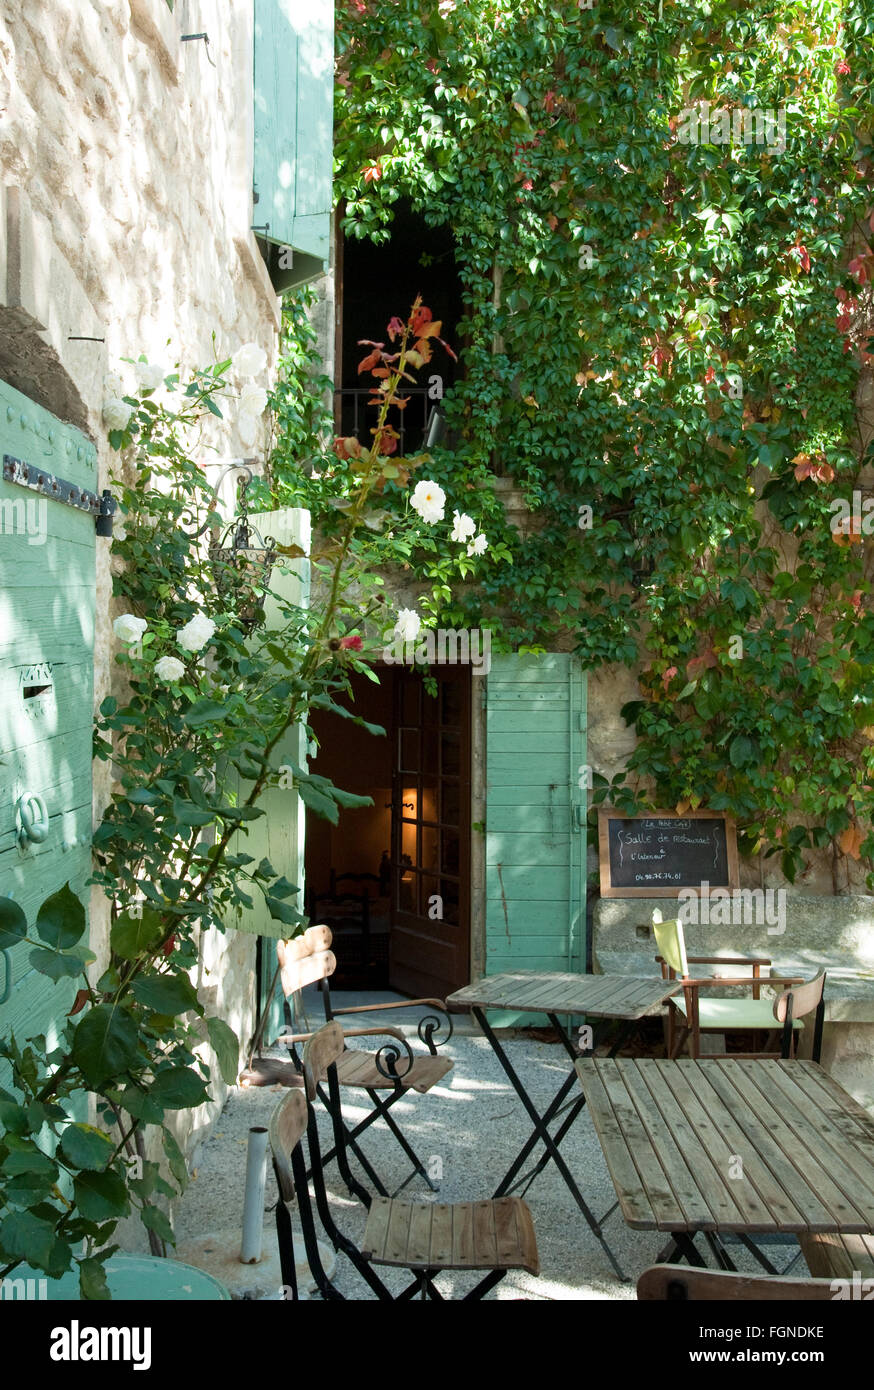 La cour d'un ancien restaurant dans un village perché de Provence- Oppède le Vieux. Banque D'Images